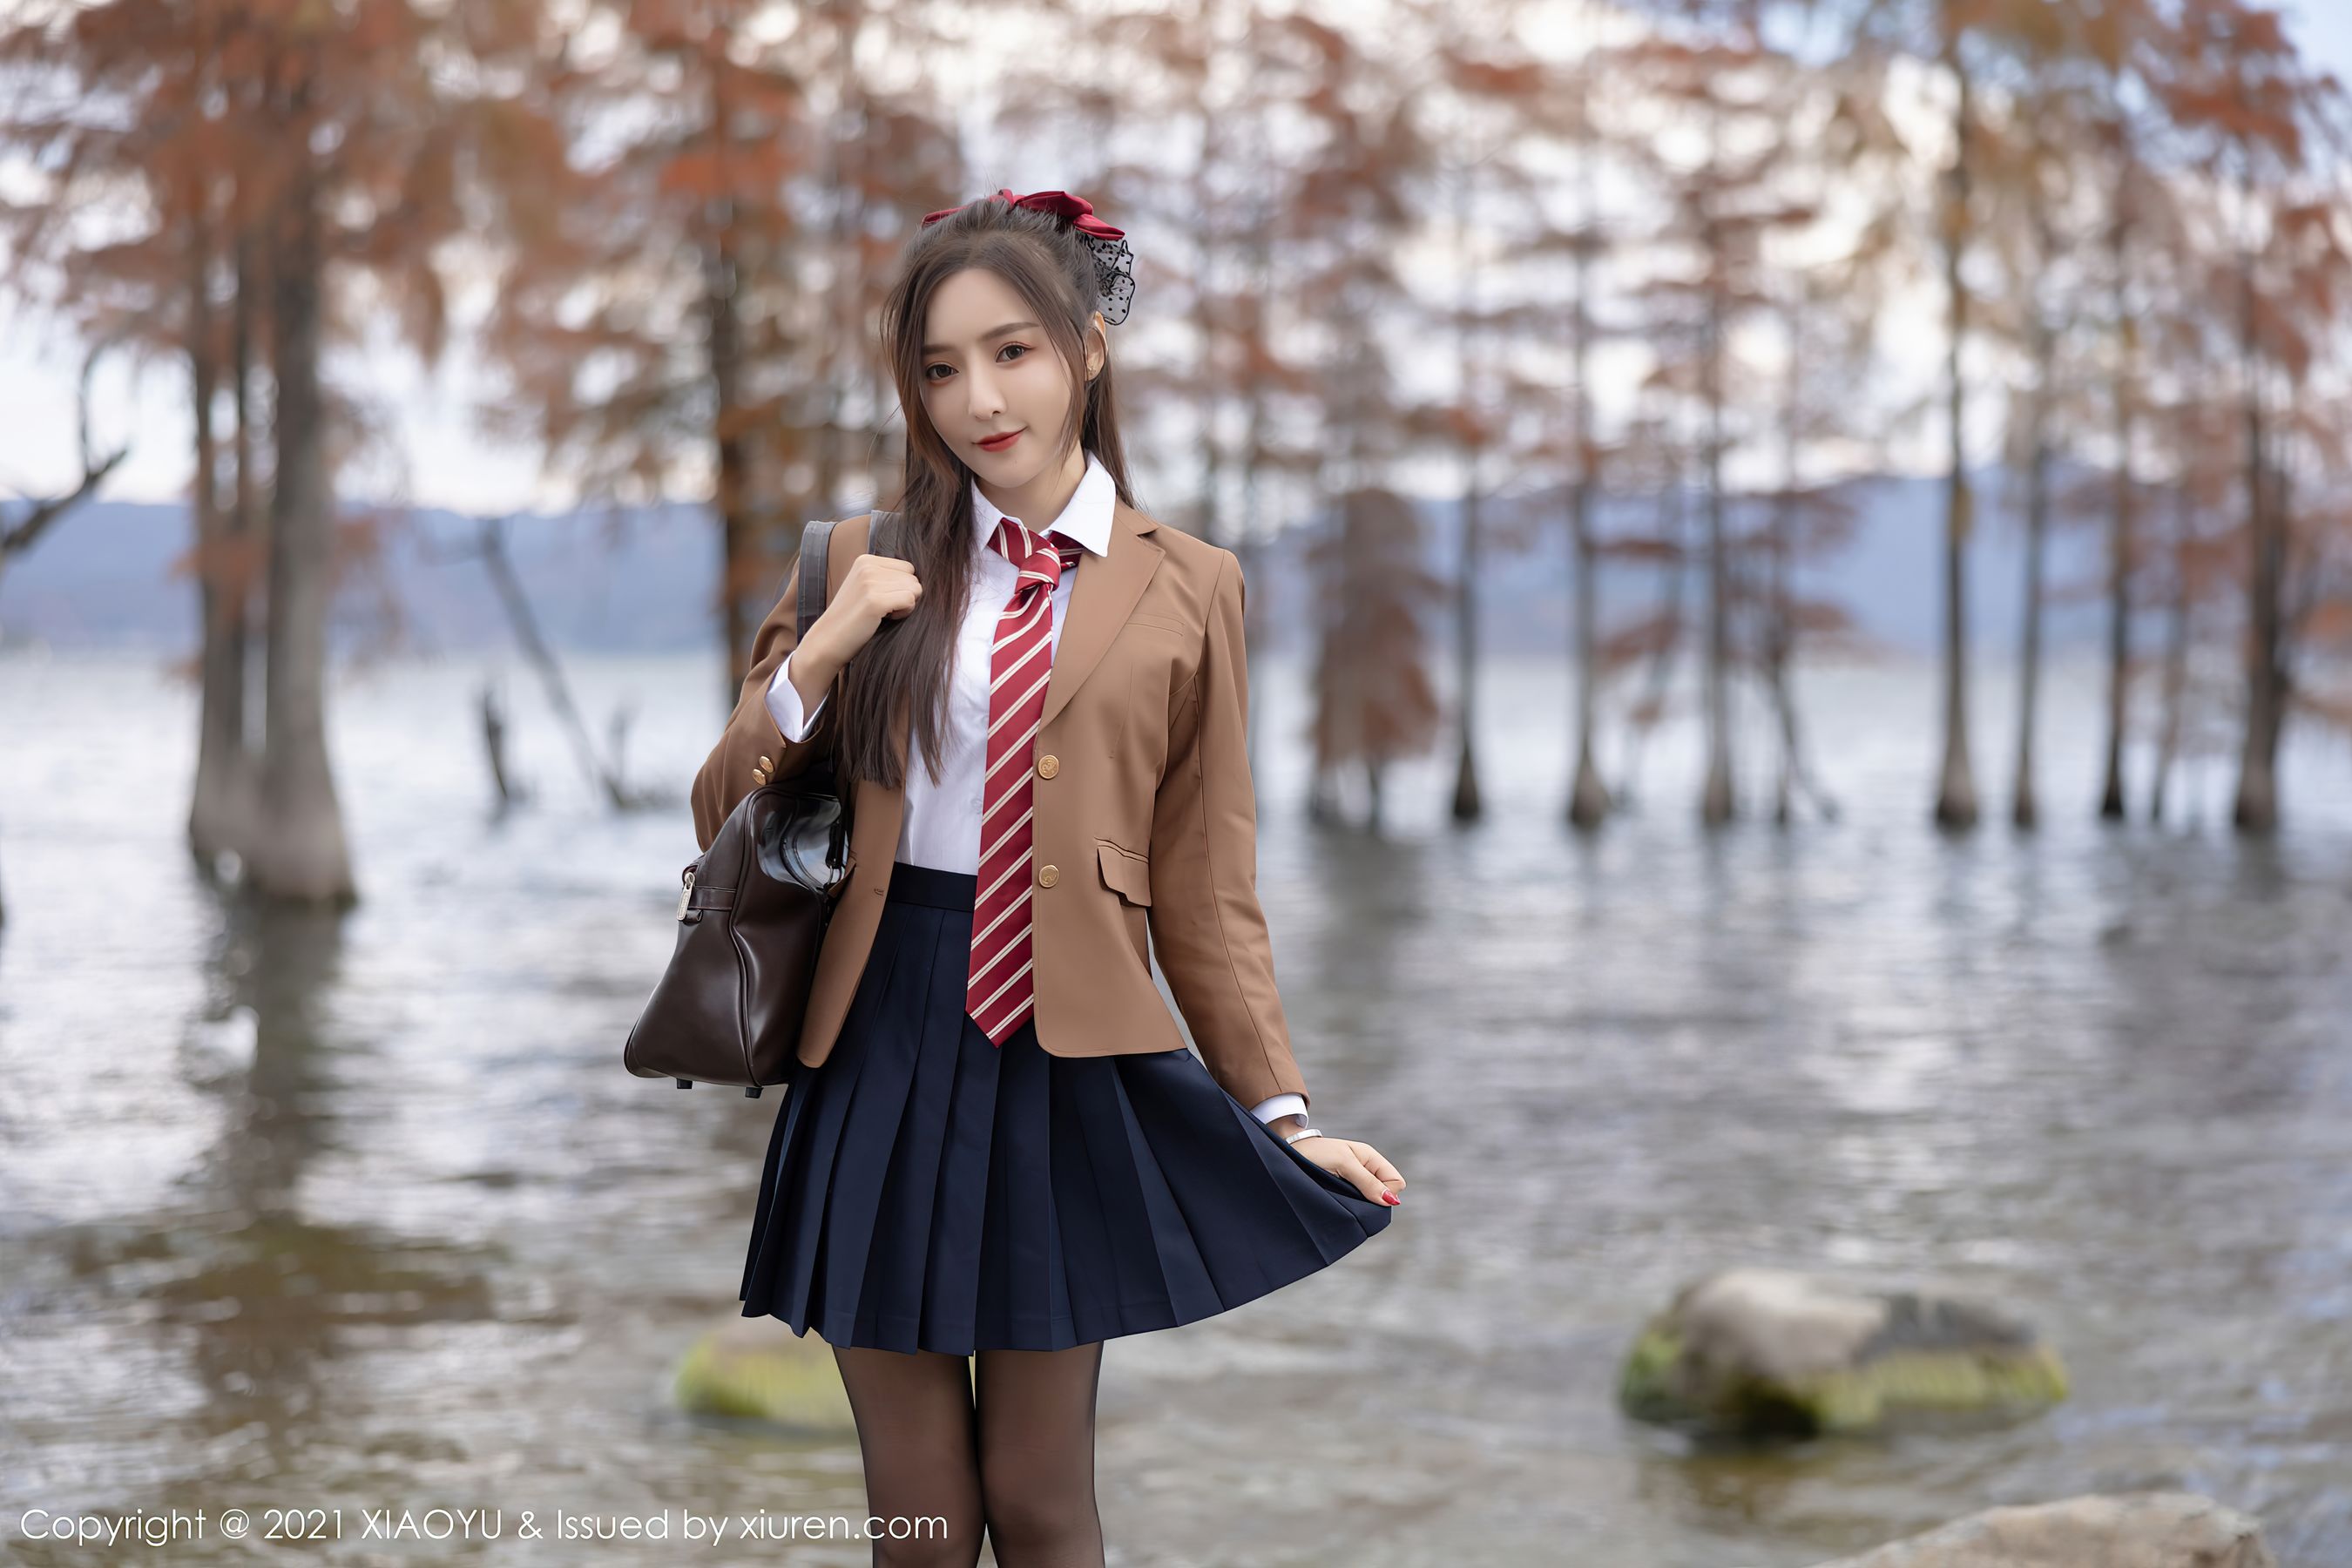 People 2700x1800 model Xiuren qingyao wang Asian school uniform women